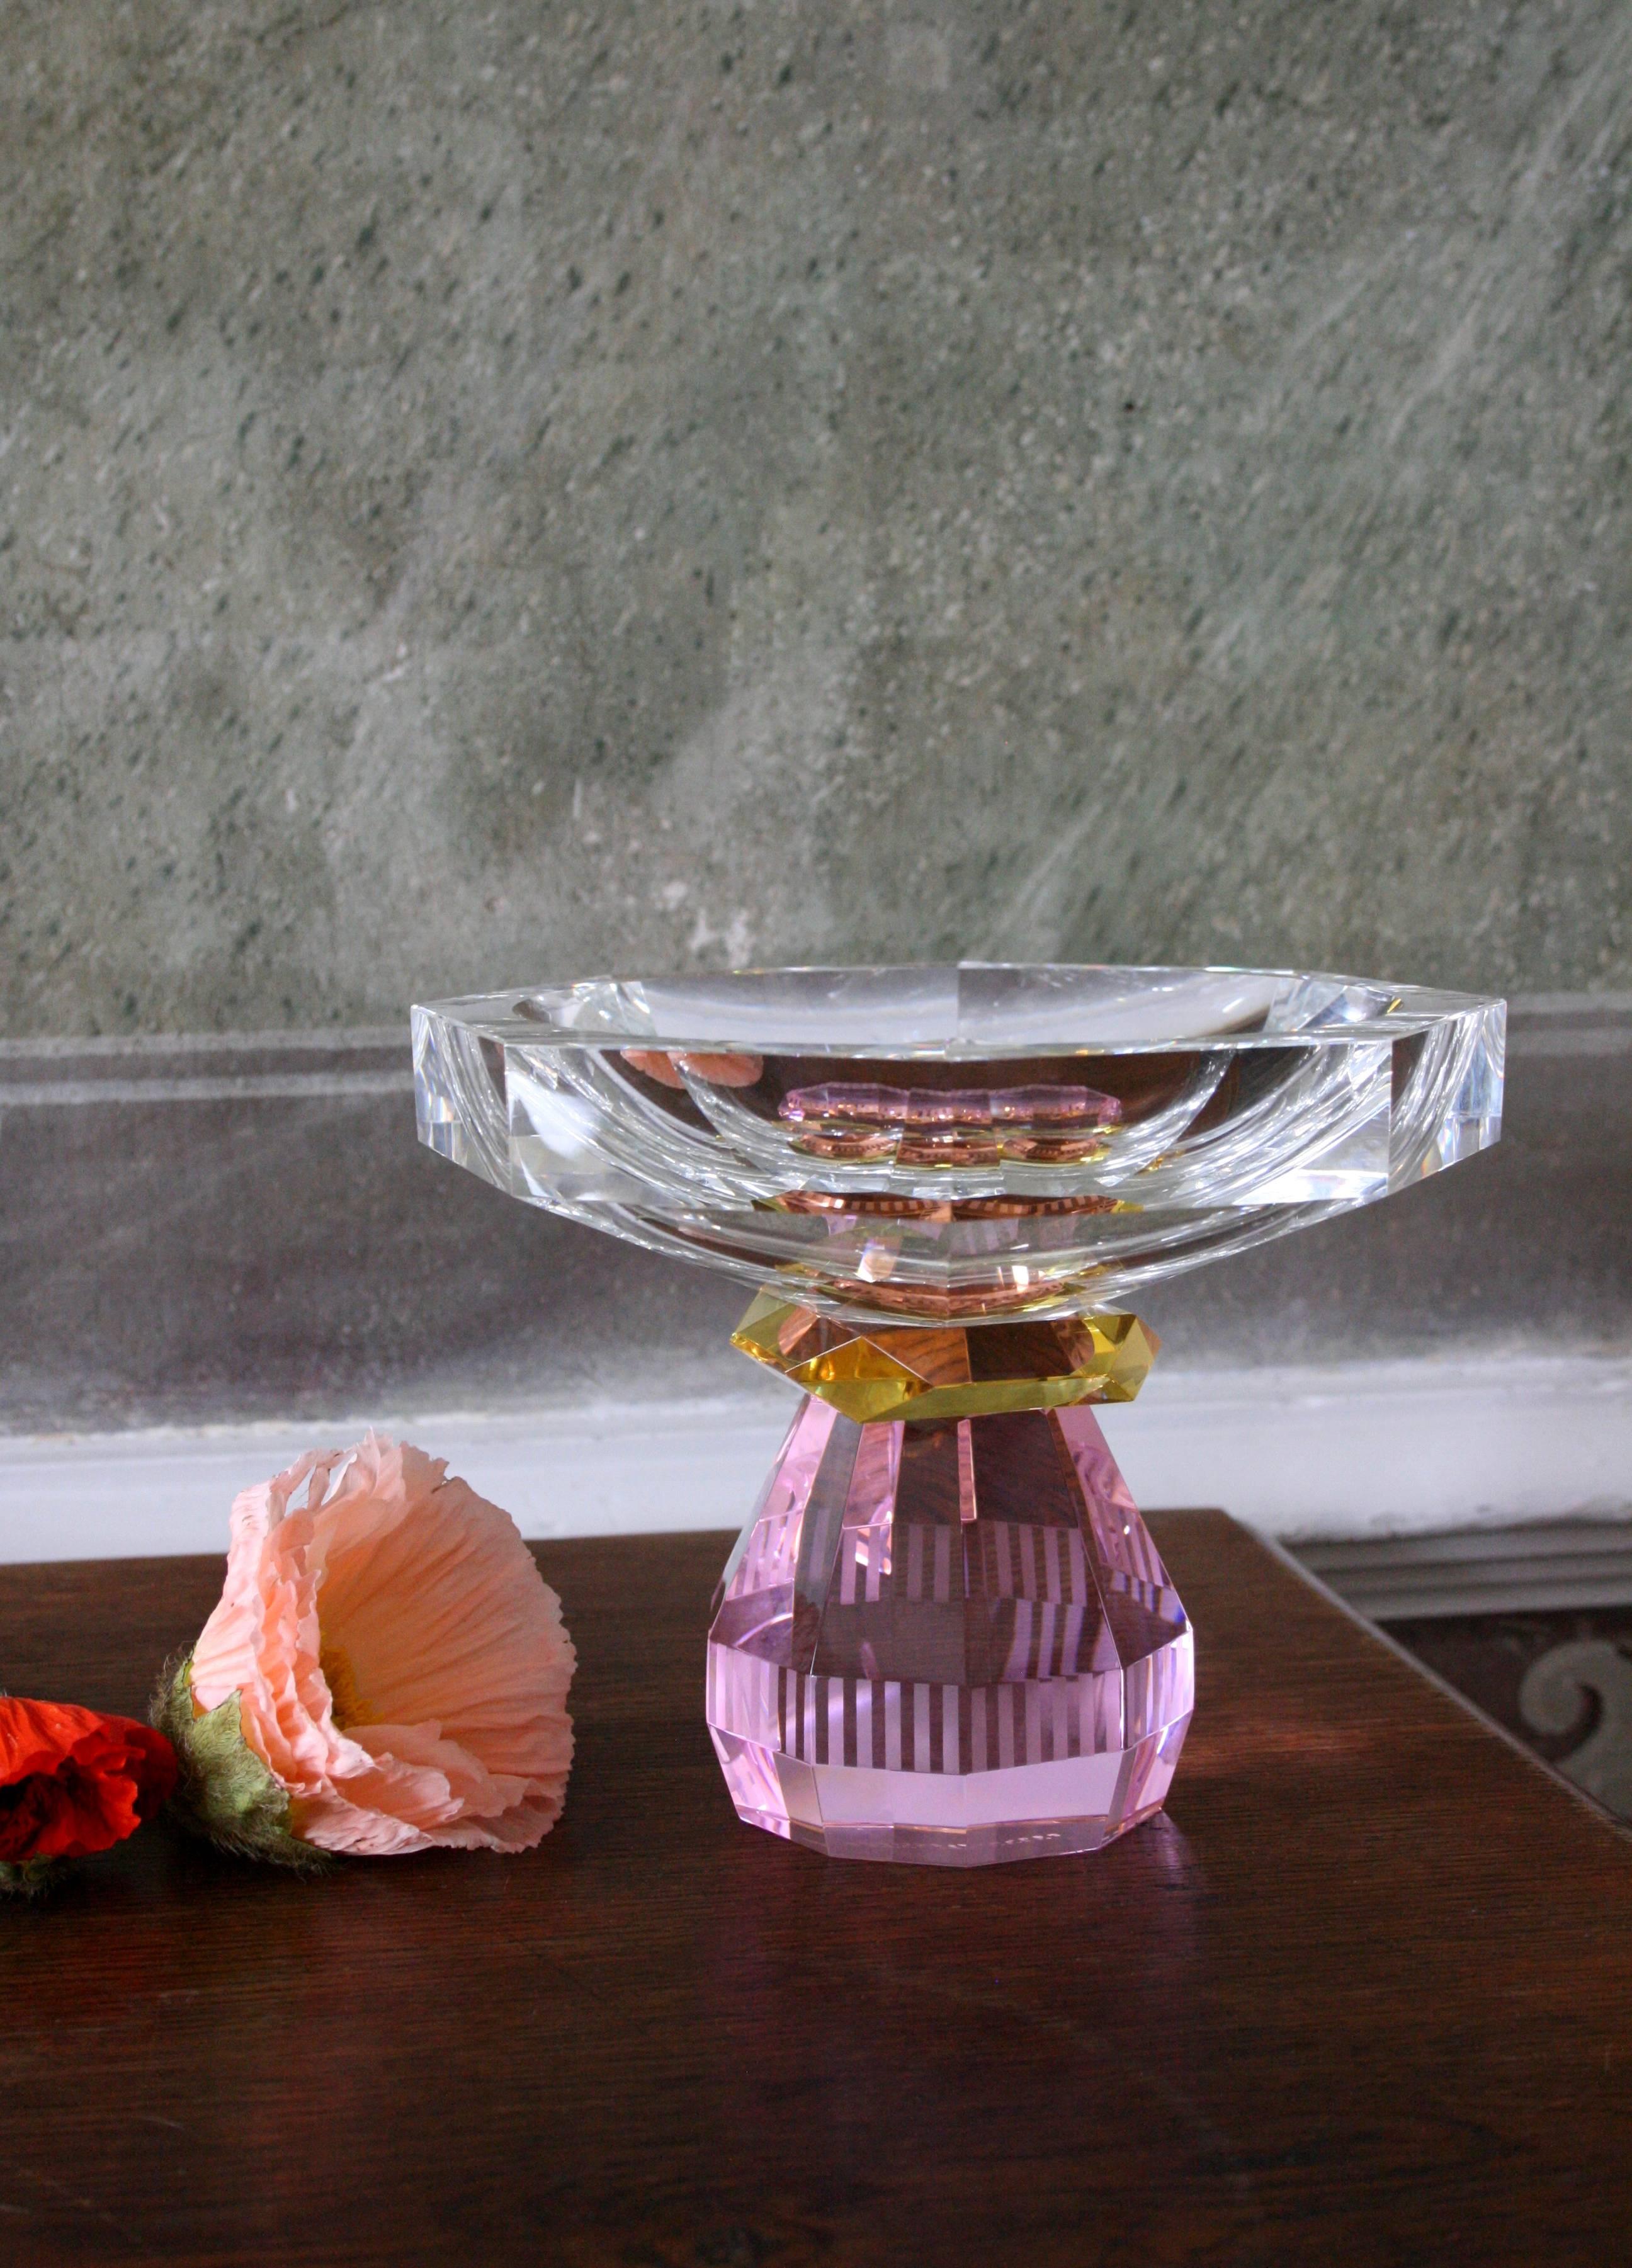 Coupe Madison, cristal contemporain sculpté à la main
Bol décoratif
Mains sculptées en cristal
Mesures : L 18 x H 14 x D 18 cm

Madison Bowl : 
Le superbe bol Madison est rayonnant, qu'il soit rempli de pétales de roses, de bougies flottantes ou de